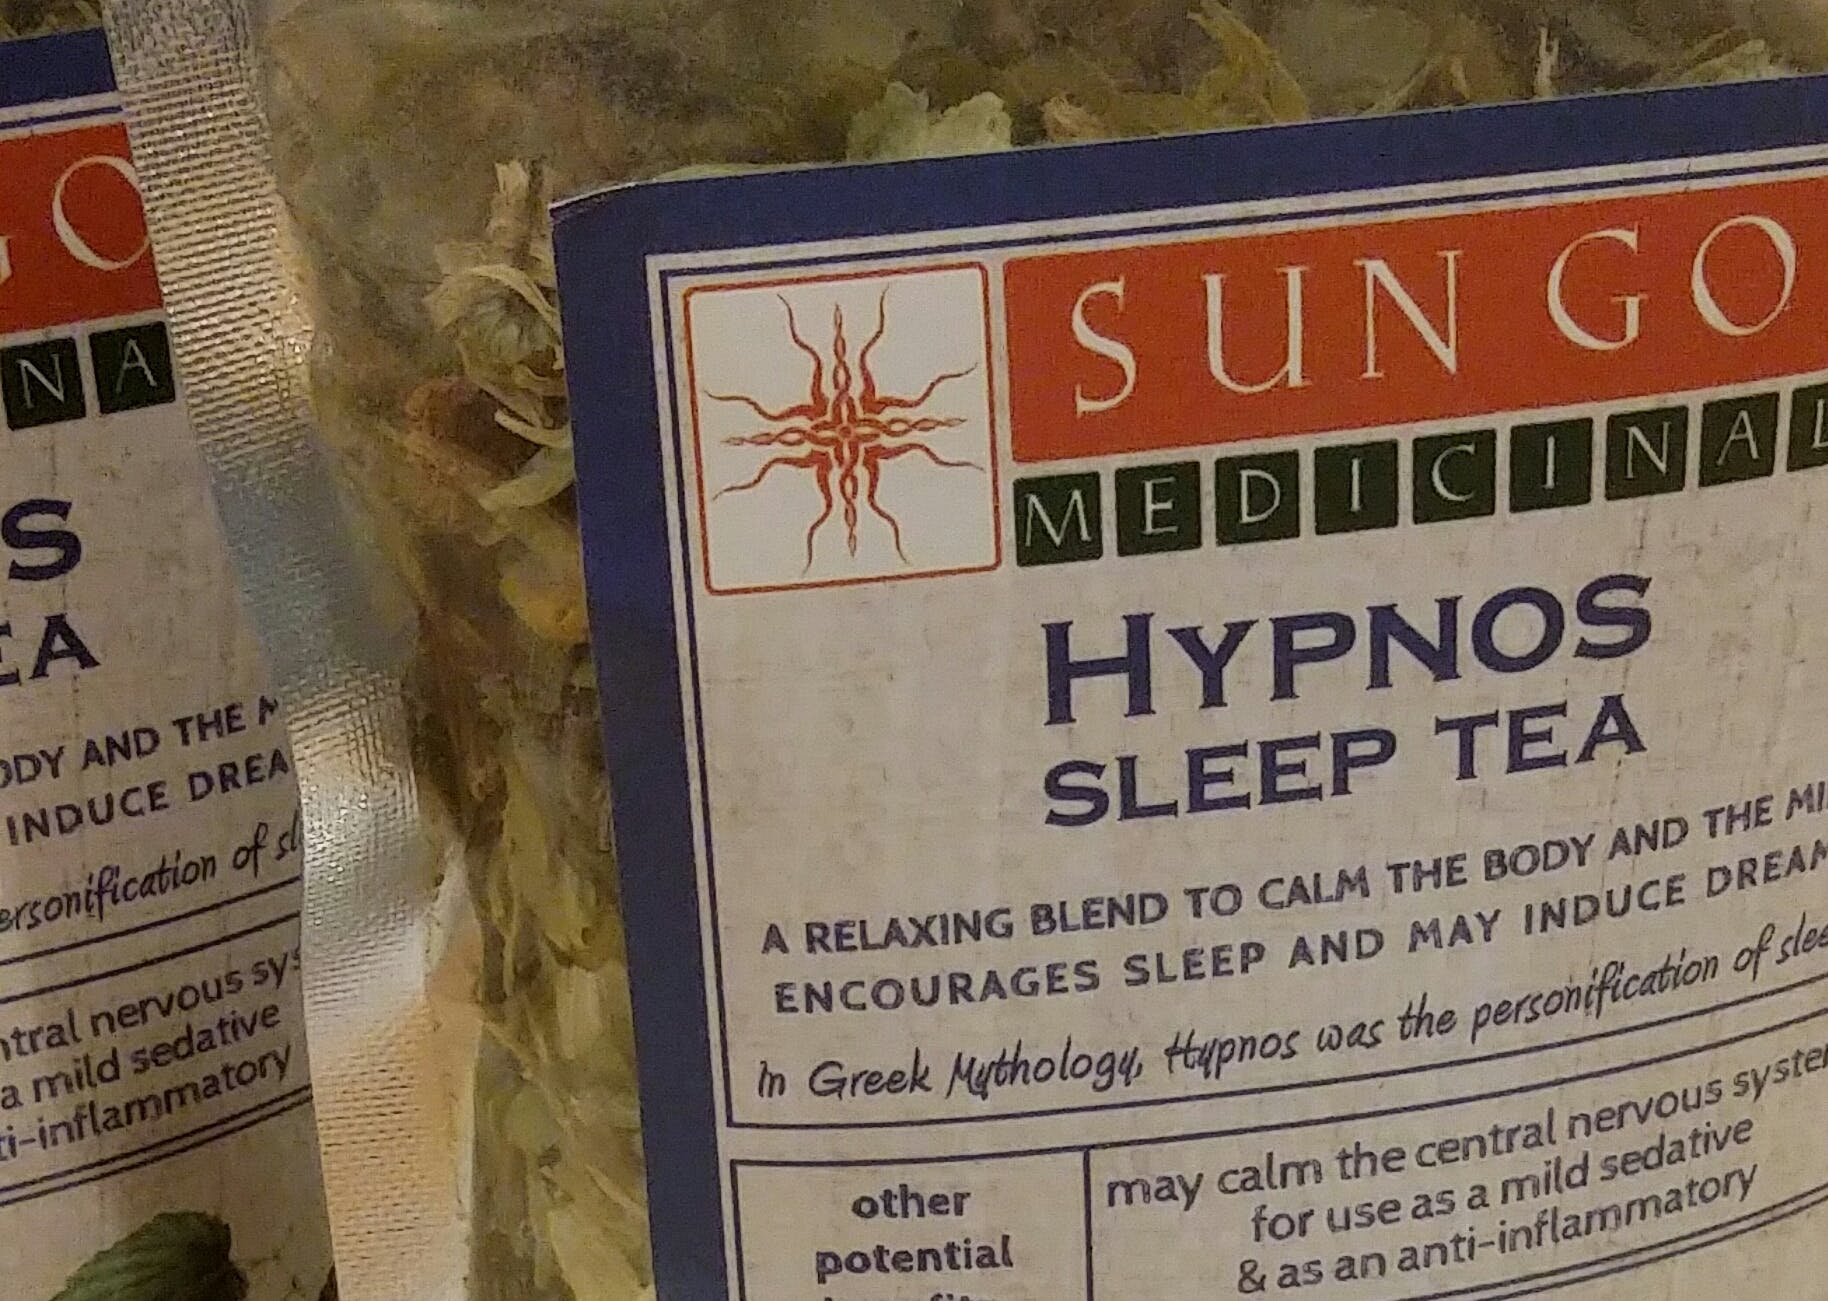 edible-sun-god-medicinals-hypnos-sleep-tea